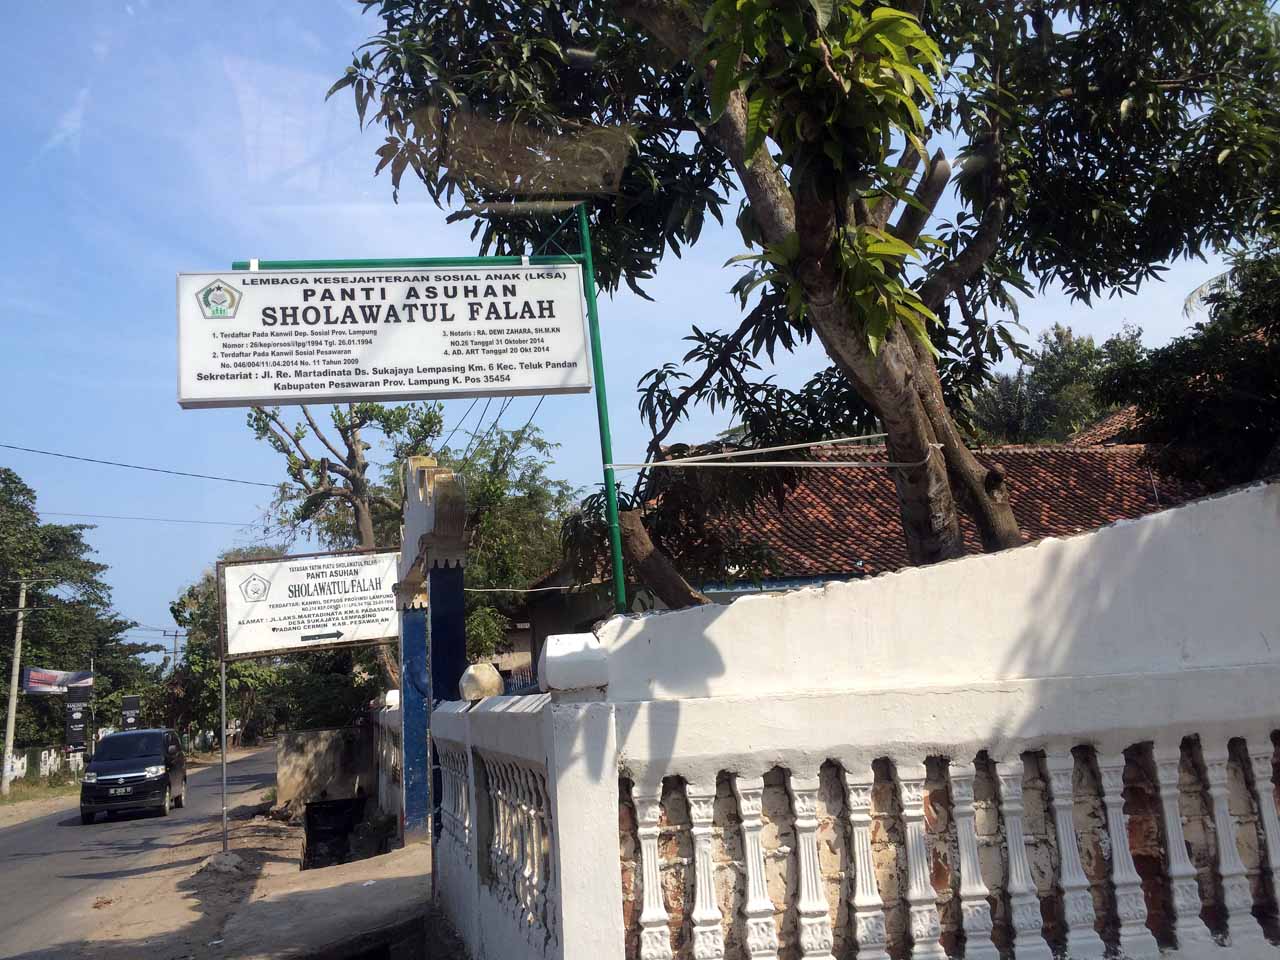 Munca Teropong Laut - Munca Lampung - Muncak Tirtayasa - Yopie Pangkey - 14